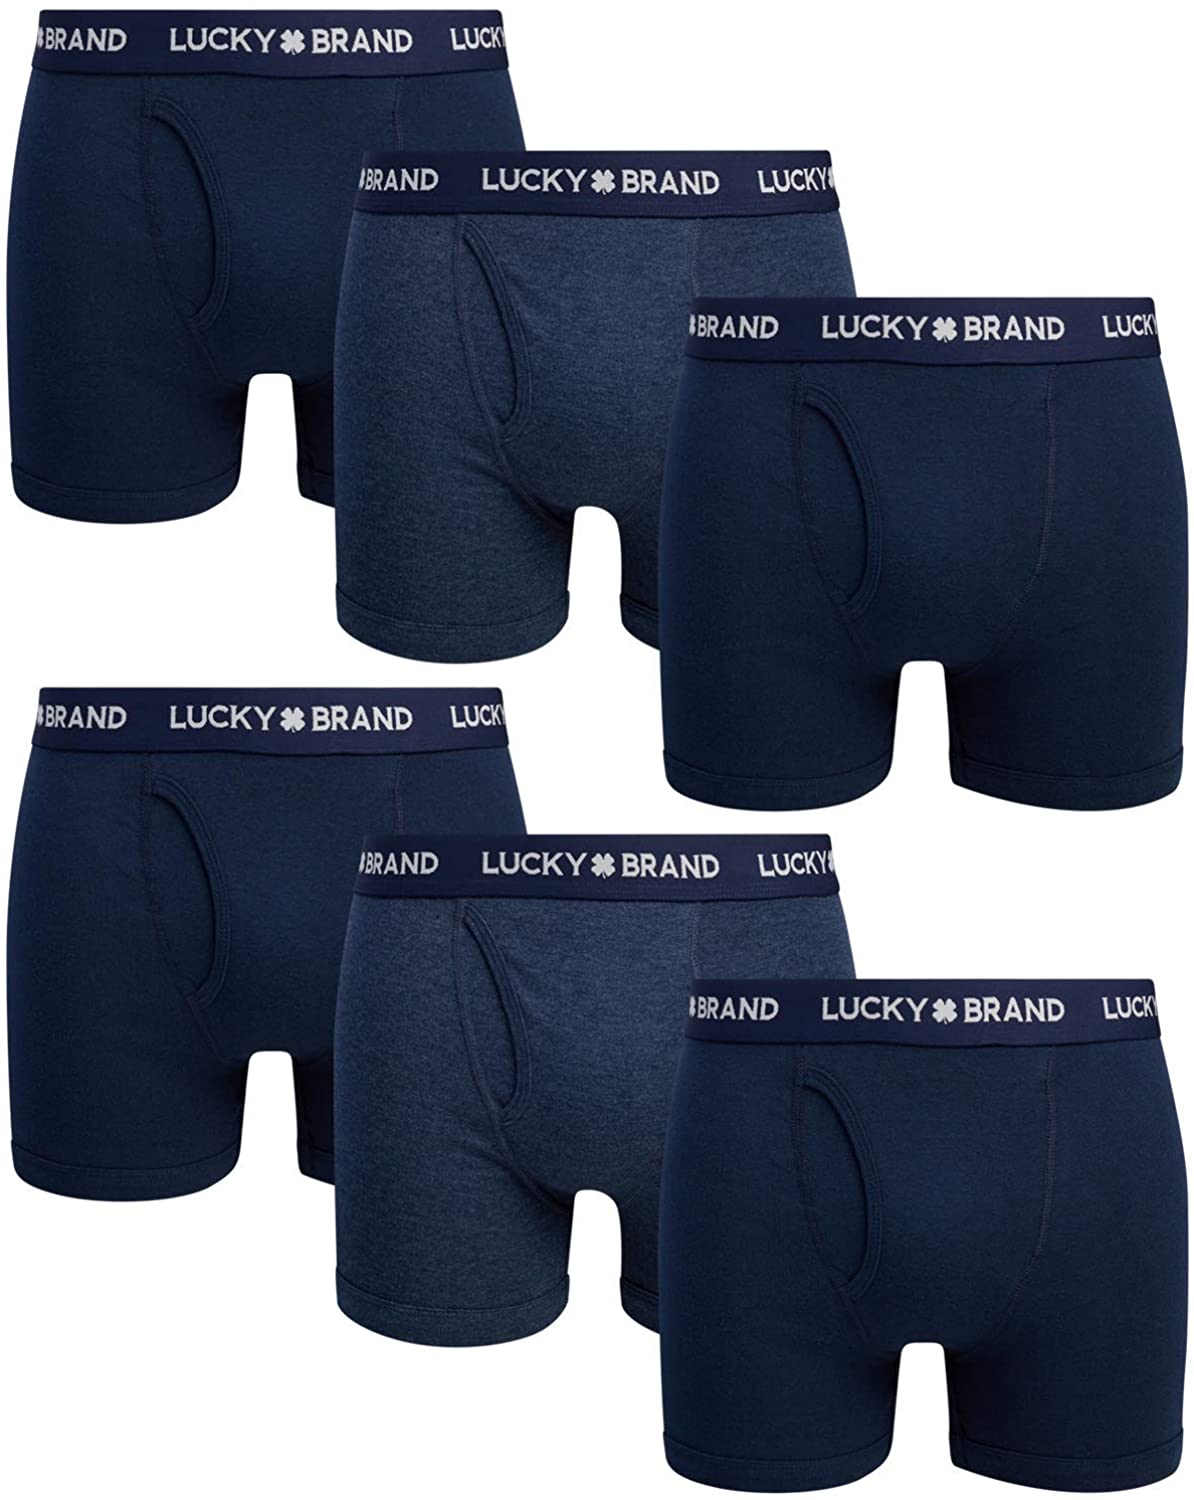 Lucky Brand Men's Underwear – Cotton Boxer Briefs (6 Pack)